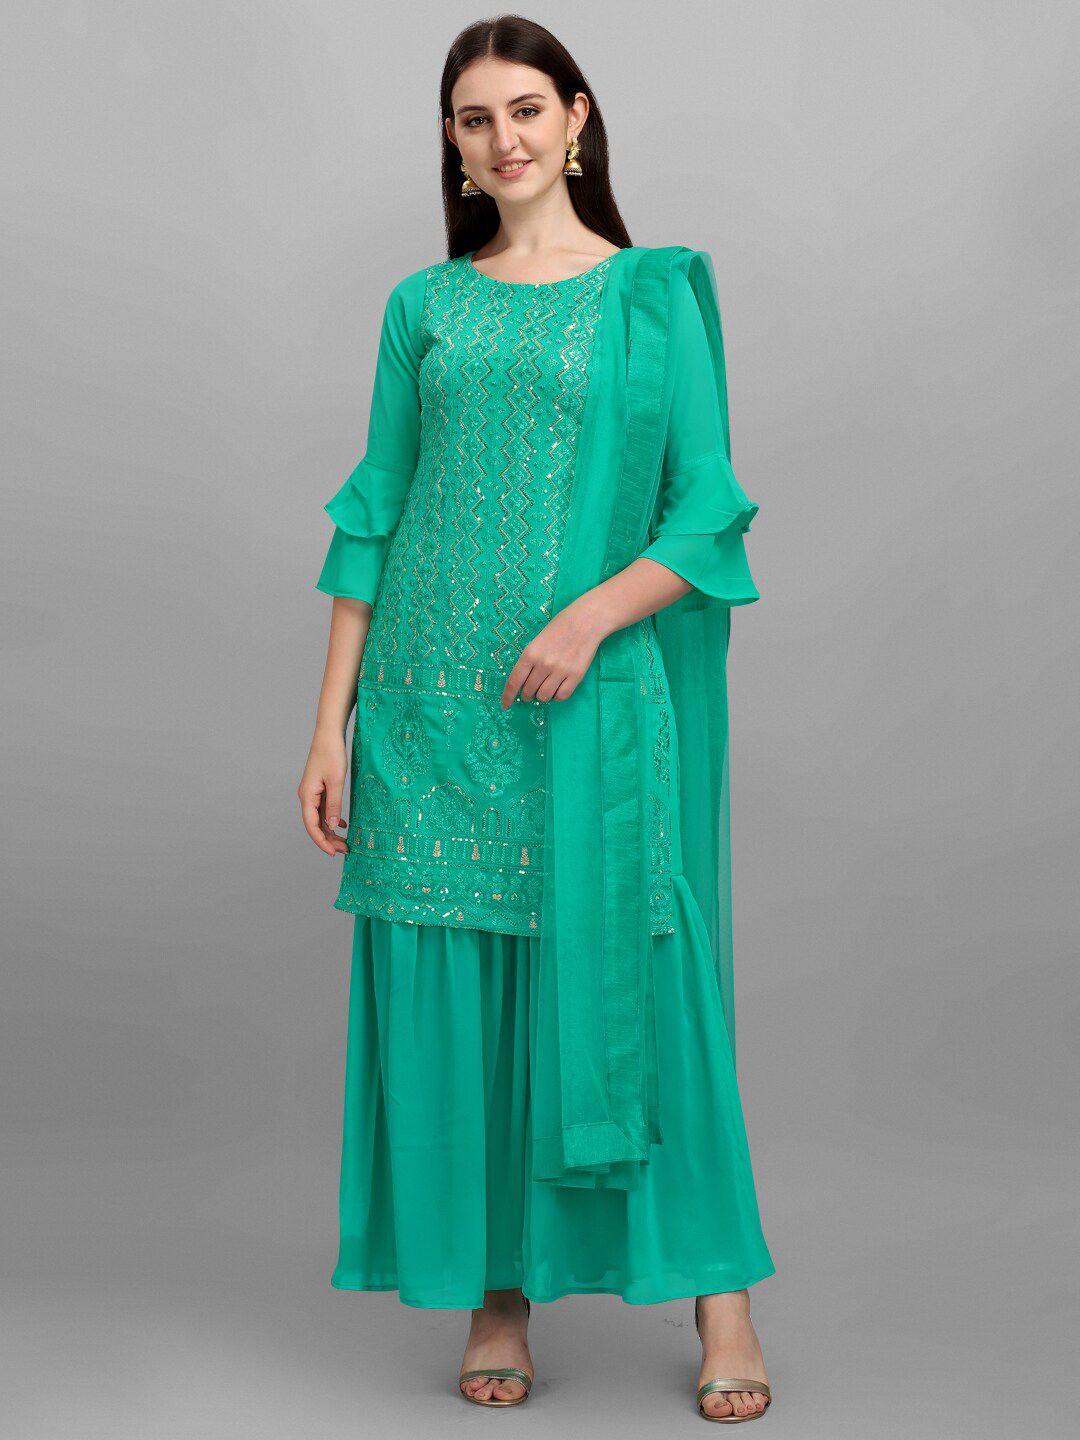 jatriqq teal green embroidered semi-stitched dress material